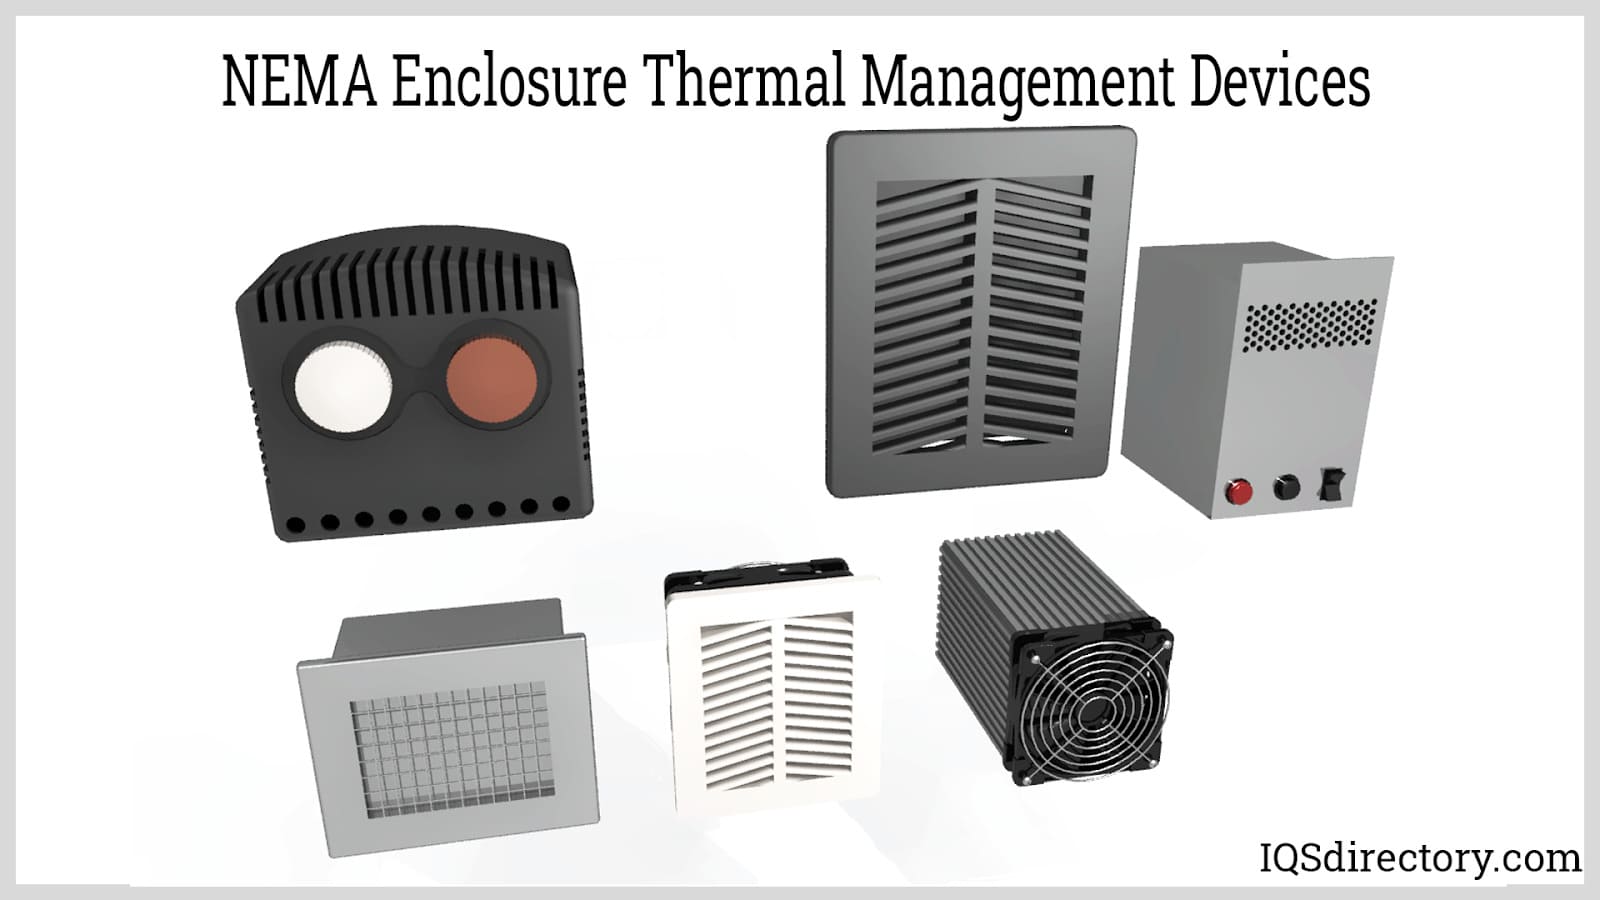 NEMA Enclosure Thermal Management Devices